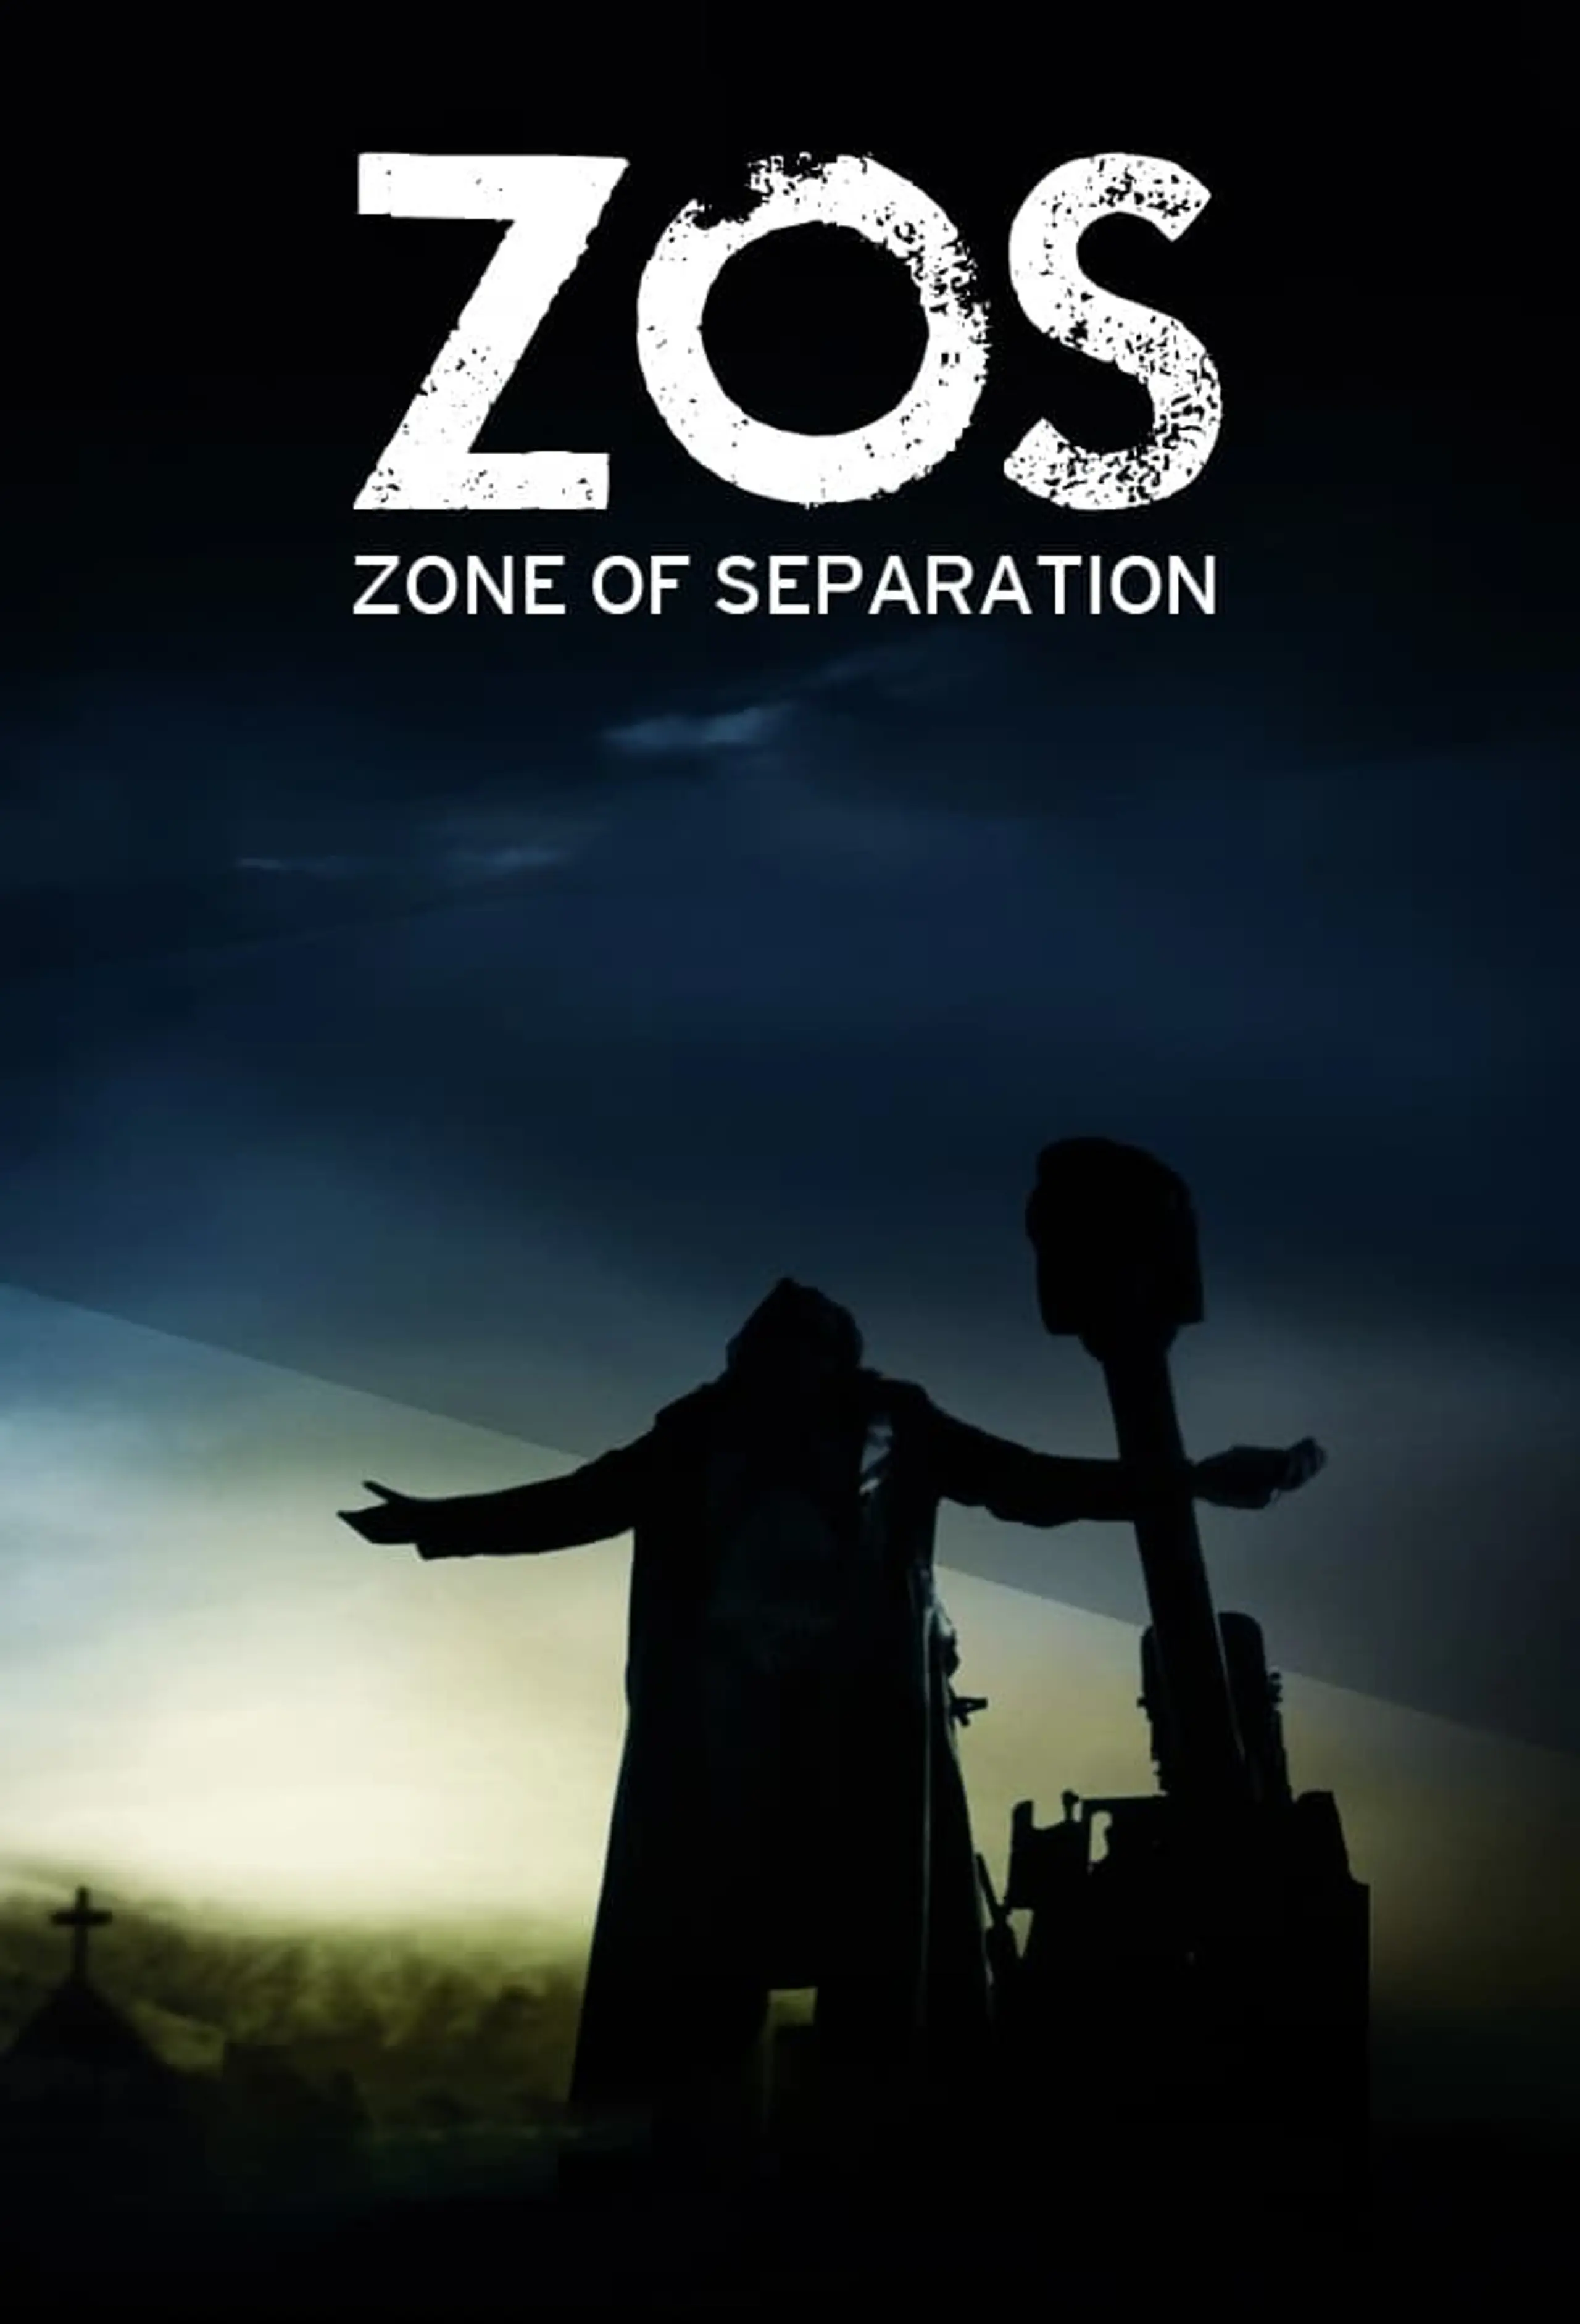 Zone of Separation – Das Kriegsgebiet